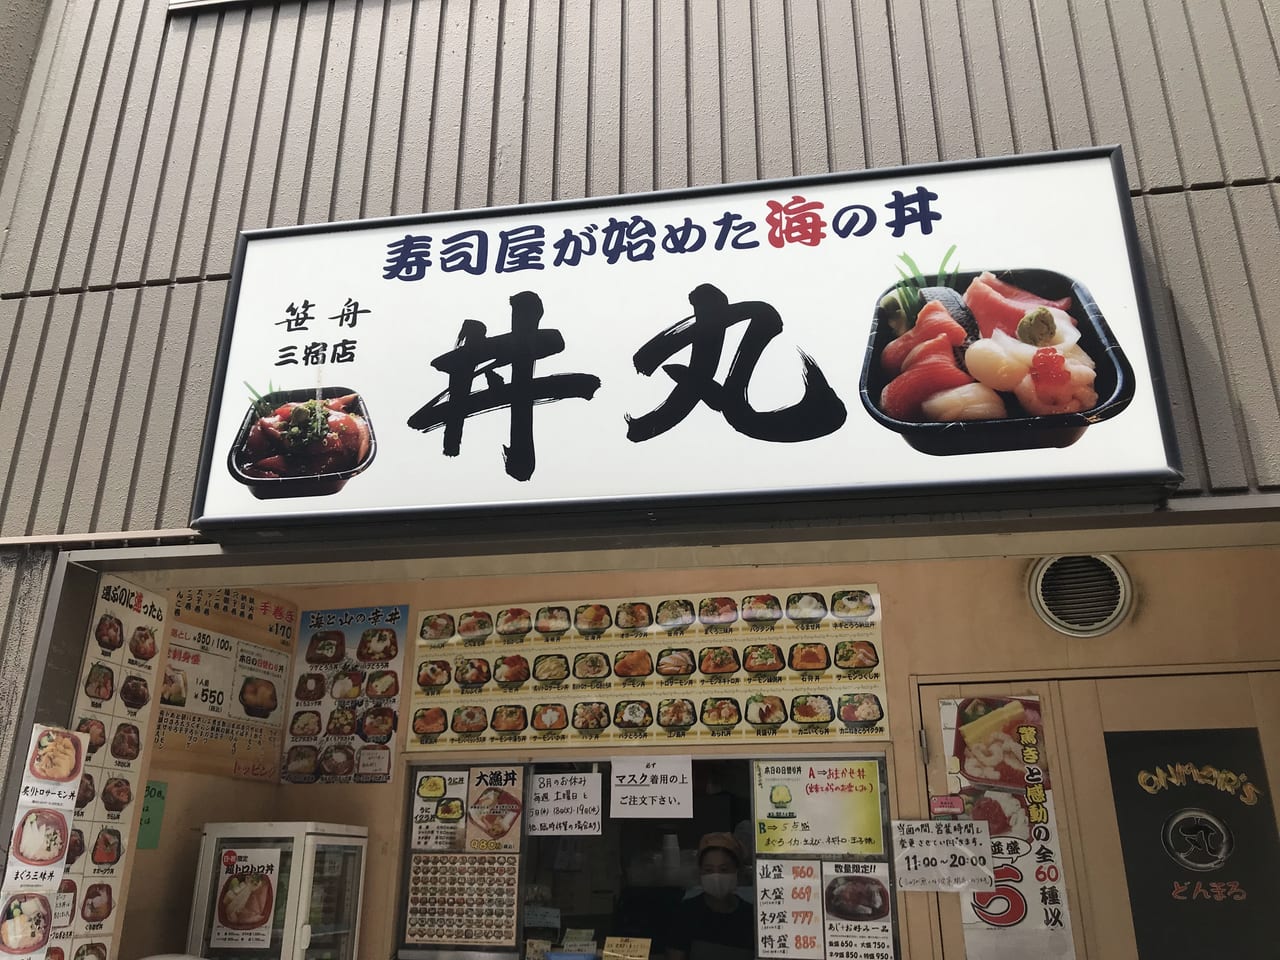 世田谷区 ワンコインでお腹いっぱいの海の幸 寿司屋さんが始めたどんぶり 丼丸 号外net 世田谷区